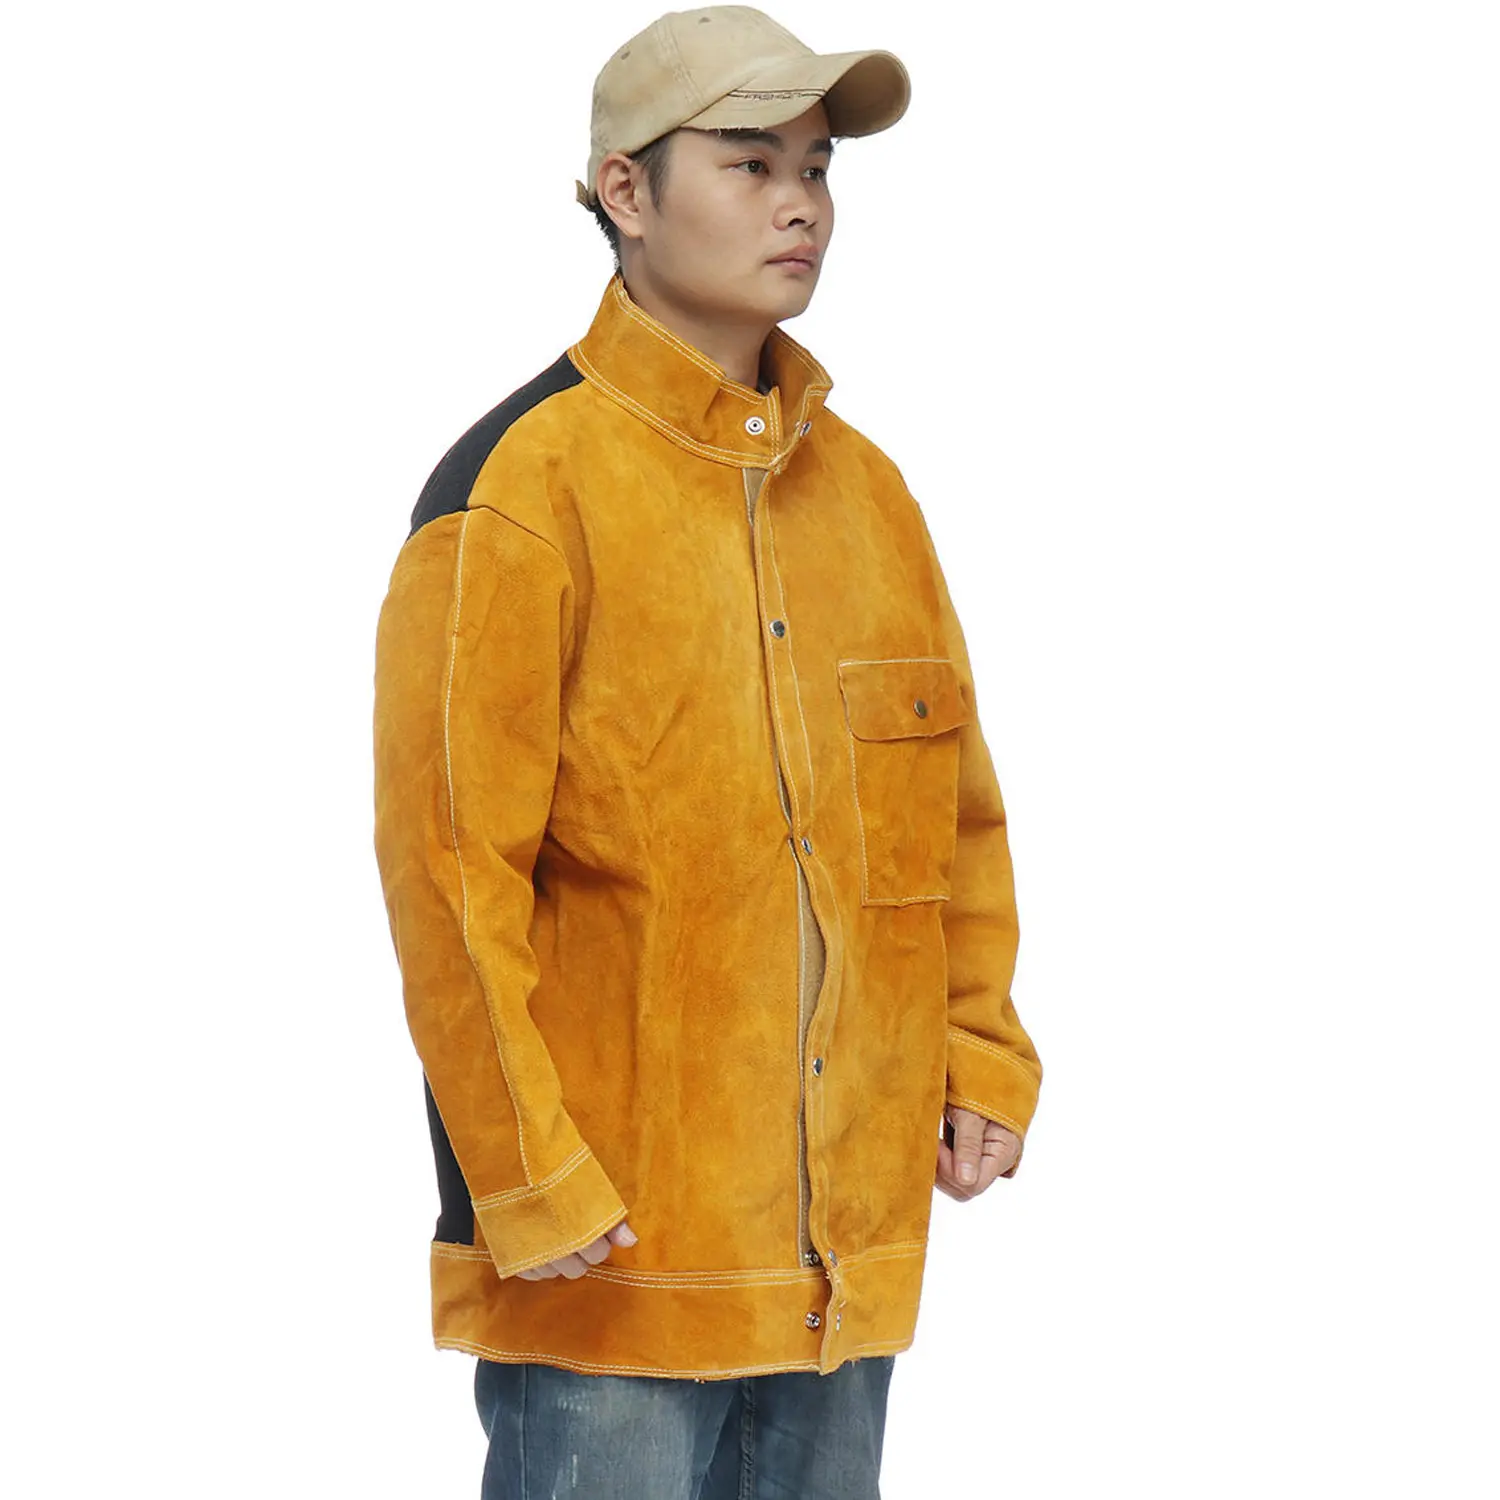 용접 재킷/분할 가죽 작업 보호 개인 보호 제품 신체 보호 안전 용접 재킷